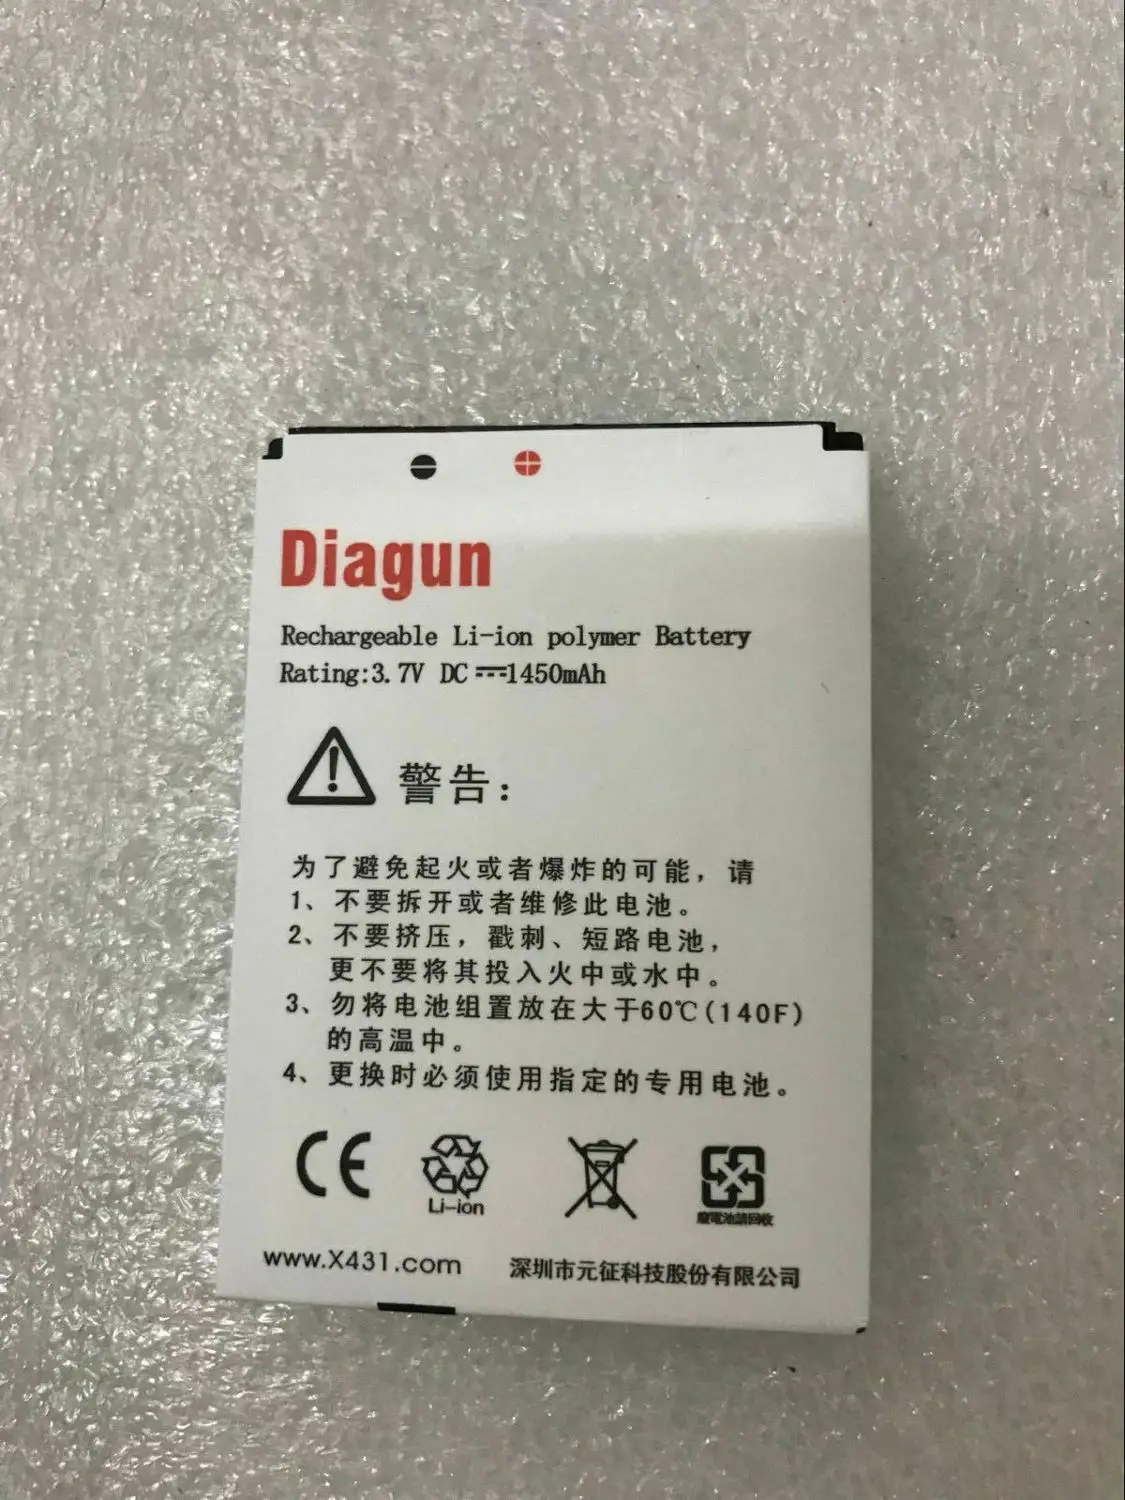 

100% оригинальный высококачественный аккумулятор Launch x431 Diagun II, оптом